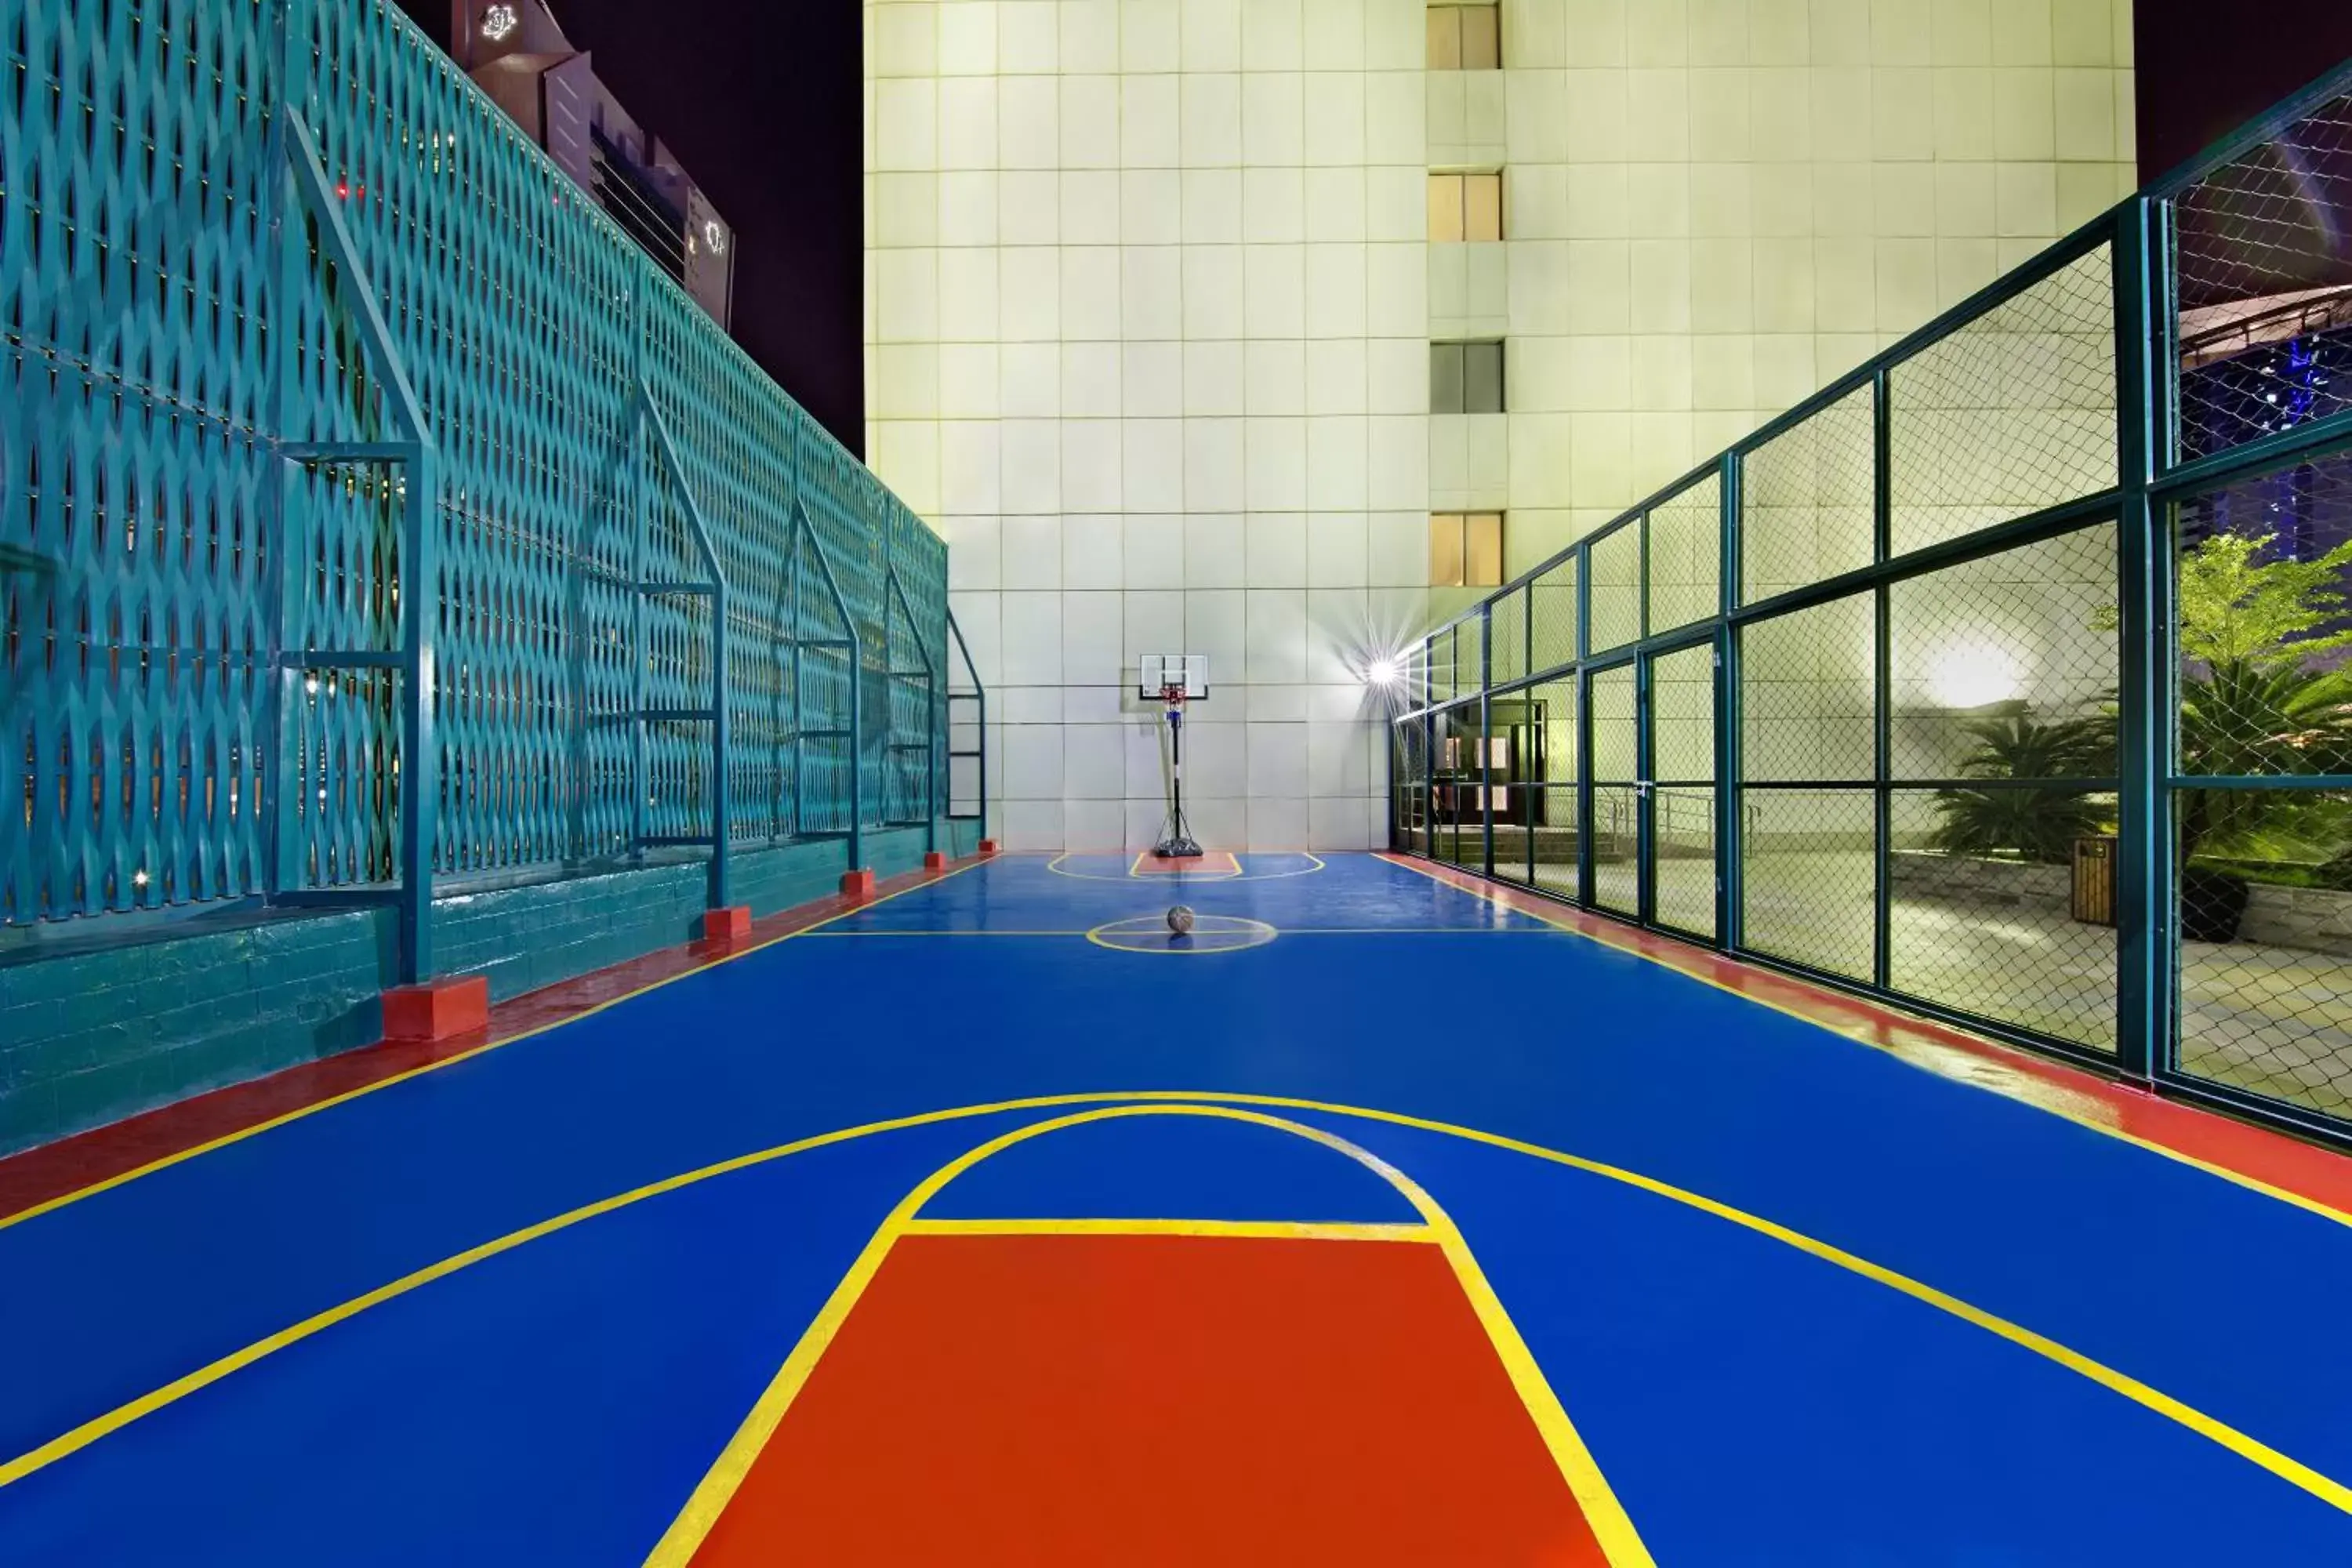 Children play ground, Other Activities in Ezdan Hotels Doha